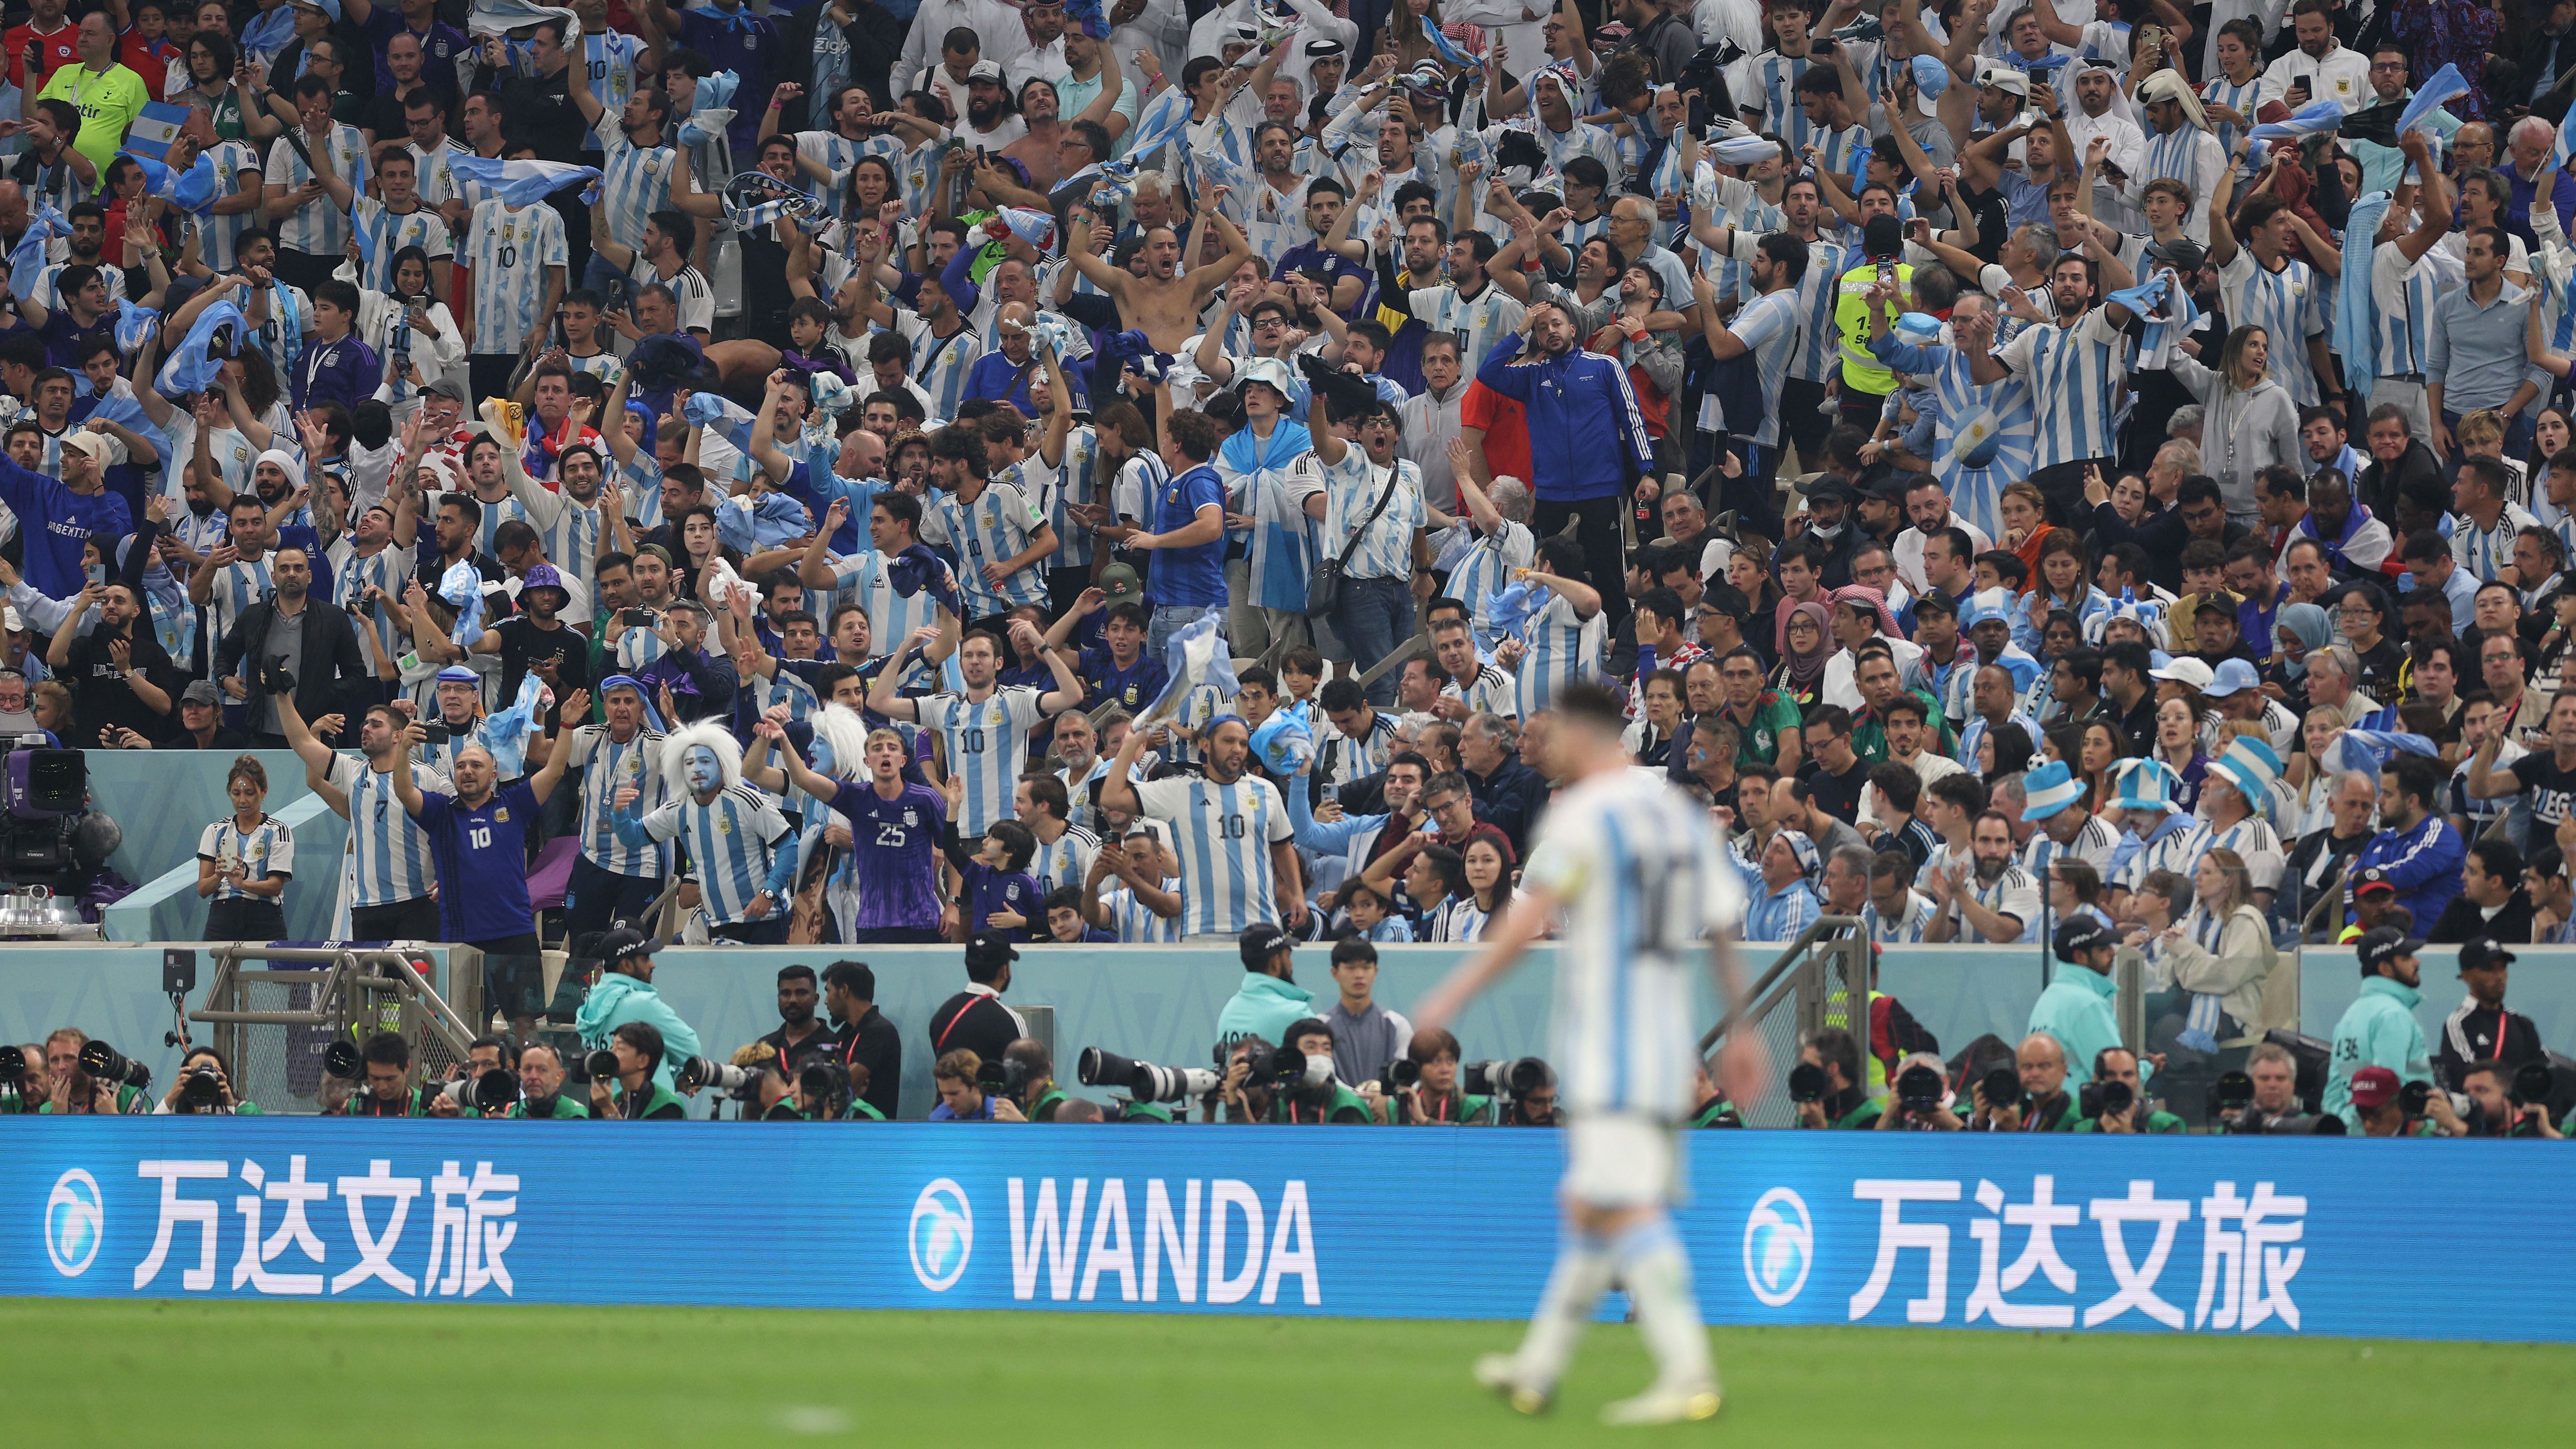 
                <strong>Fans: Argentinien</strong><br>
                Für die argentinischen Fans muss sich der Turnierverlauf nach der Auftaktniederlage gegen Saudi-Arabien wie ein Traum anfühlen. Superstar Messi verzückt die Anhänger mit Kabinettstückchen wie zu besten Ballon d'Or-Zeiten und greift tatsächlich zum Ende seiner Karriere nochmal nach der Kirsche auf der Torte seiner unvergleichlichen Karriere. Entsprechend ekstatisch reagiert der argentinische 12. Mann und peitscht die "Albiceleste" bedingungslos nach vorne. So richtig kann auch auf der Tribüne so recht keiner sein Glück fassen, angesichts des guten Offensivfußballs, den das Team nicht zuletzt gegen Kroatien auf den Rasen zauberte. Was die Argentinier auf den Rängen bisher abfeiern, ist auf jeden Fall bereits weltmeisterlich.
              